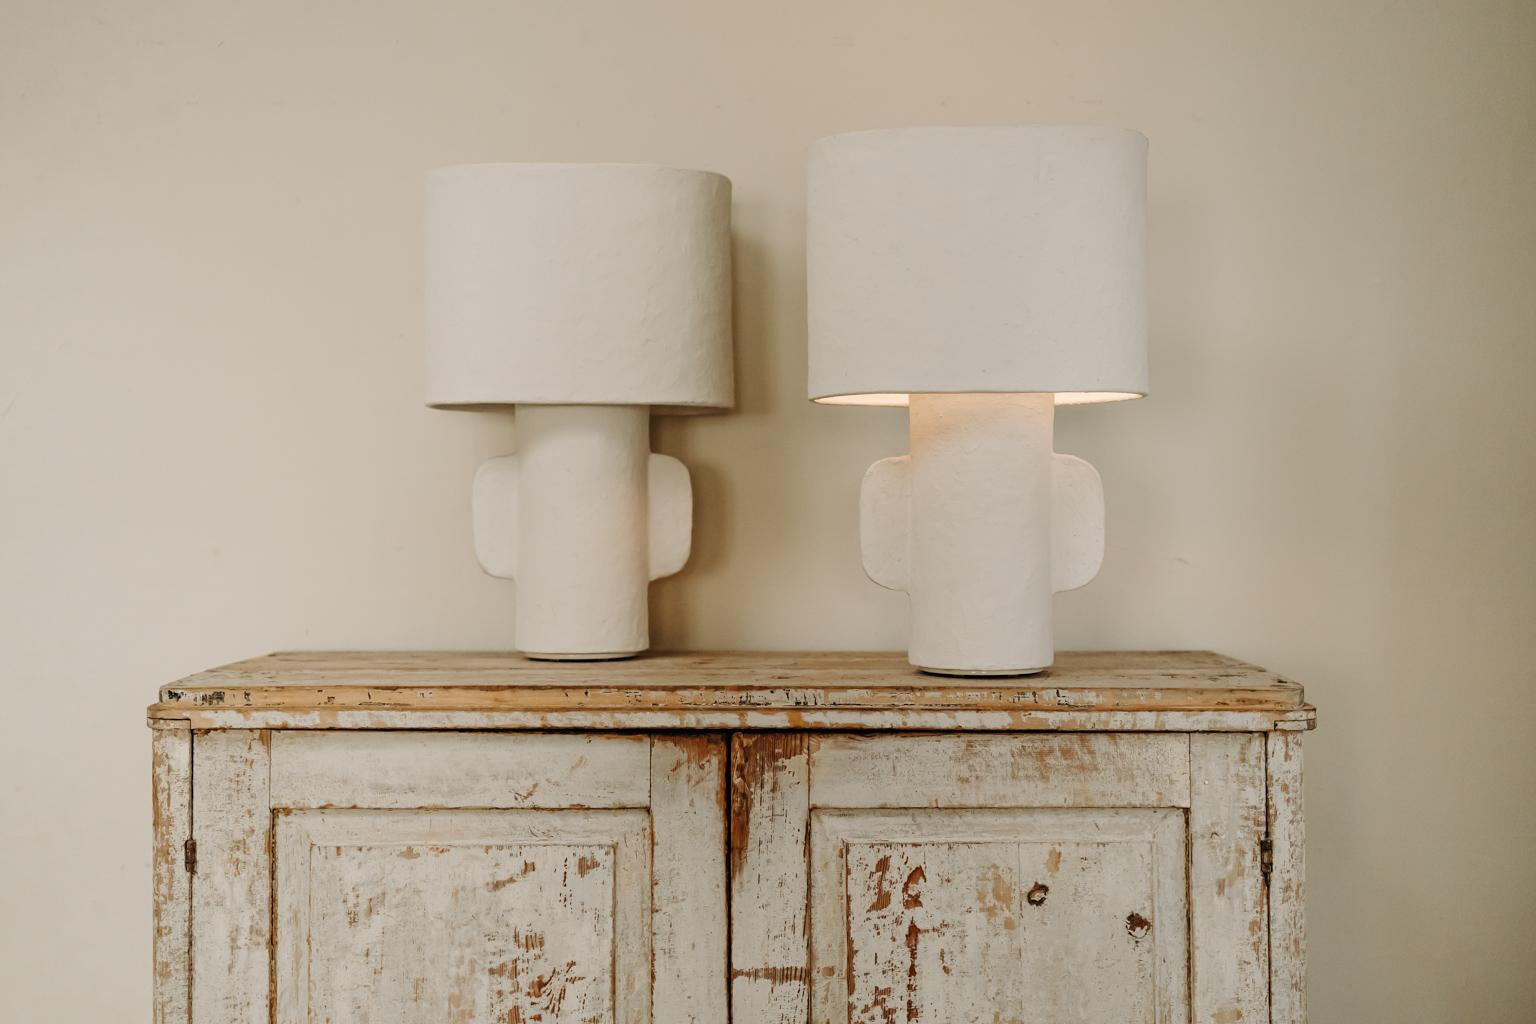 Ces lampes de table sont fabriquées en papier mâché, un modèle très élégant, parfait comme lampe de lit, mais qui peut être utilisé partout dans la maison.